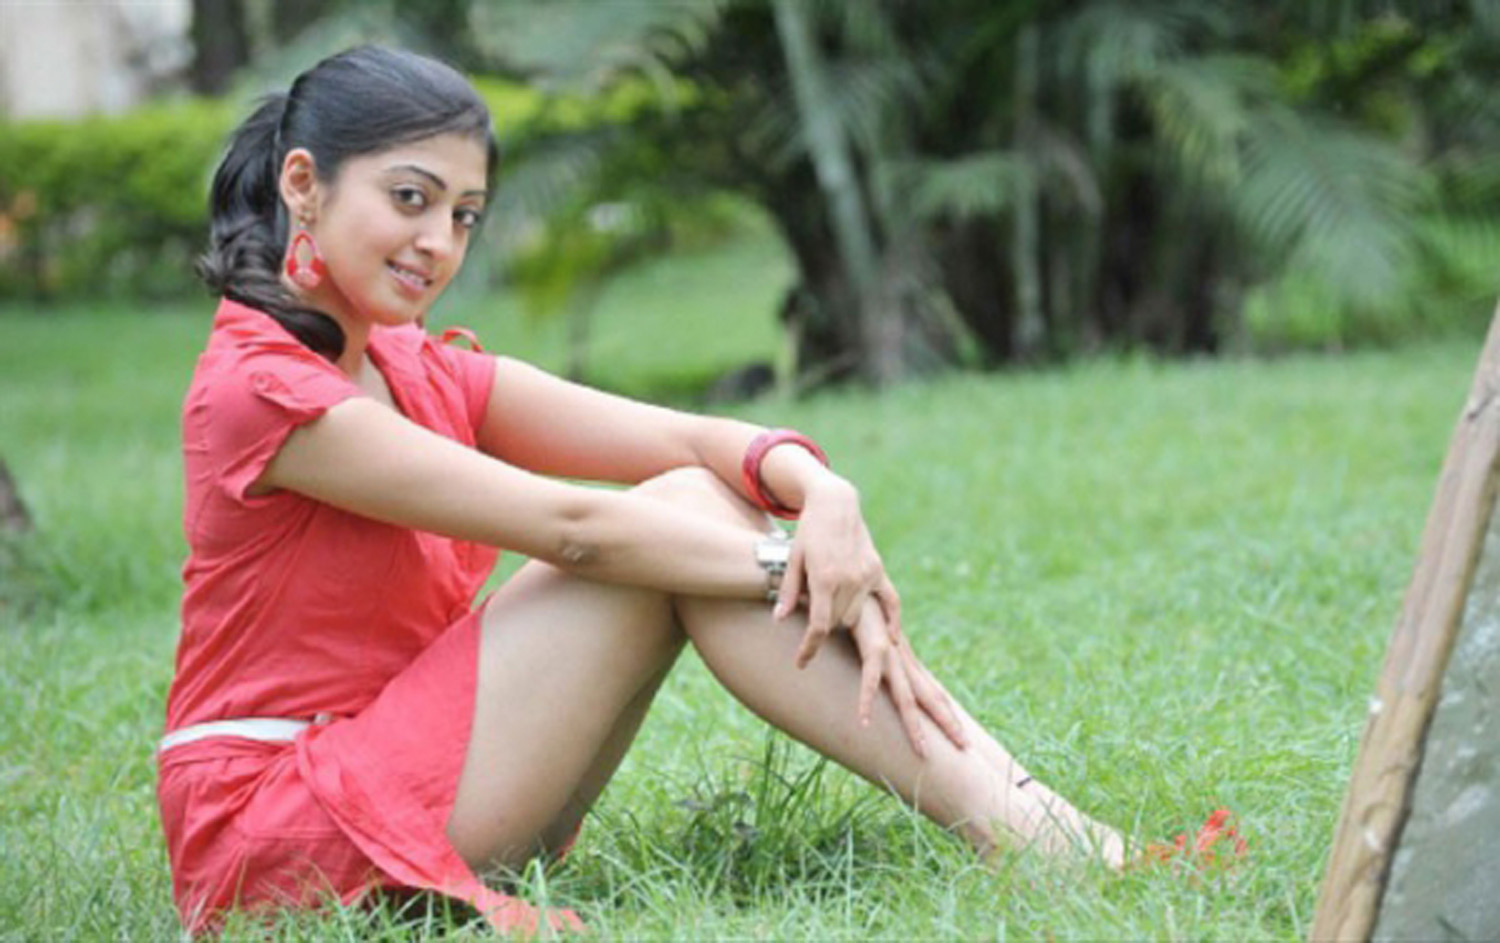 Actress Galery 7-Tamil Telugu Kannada Actress